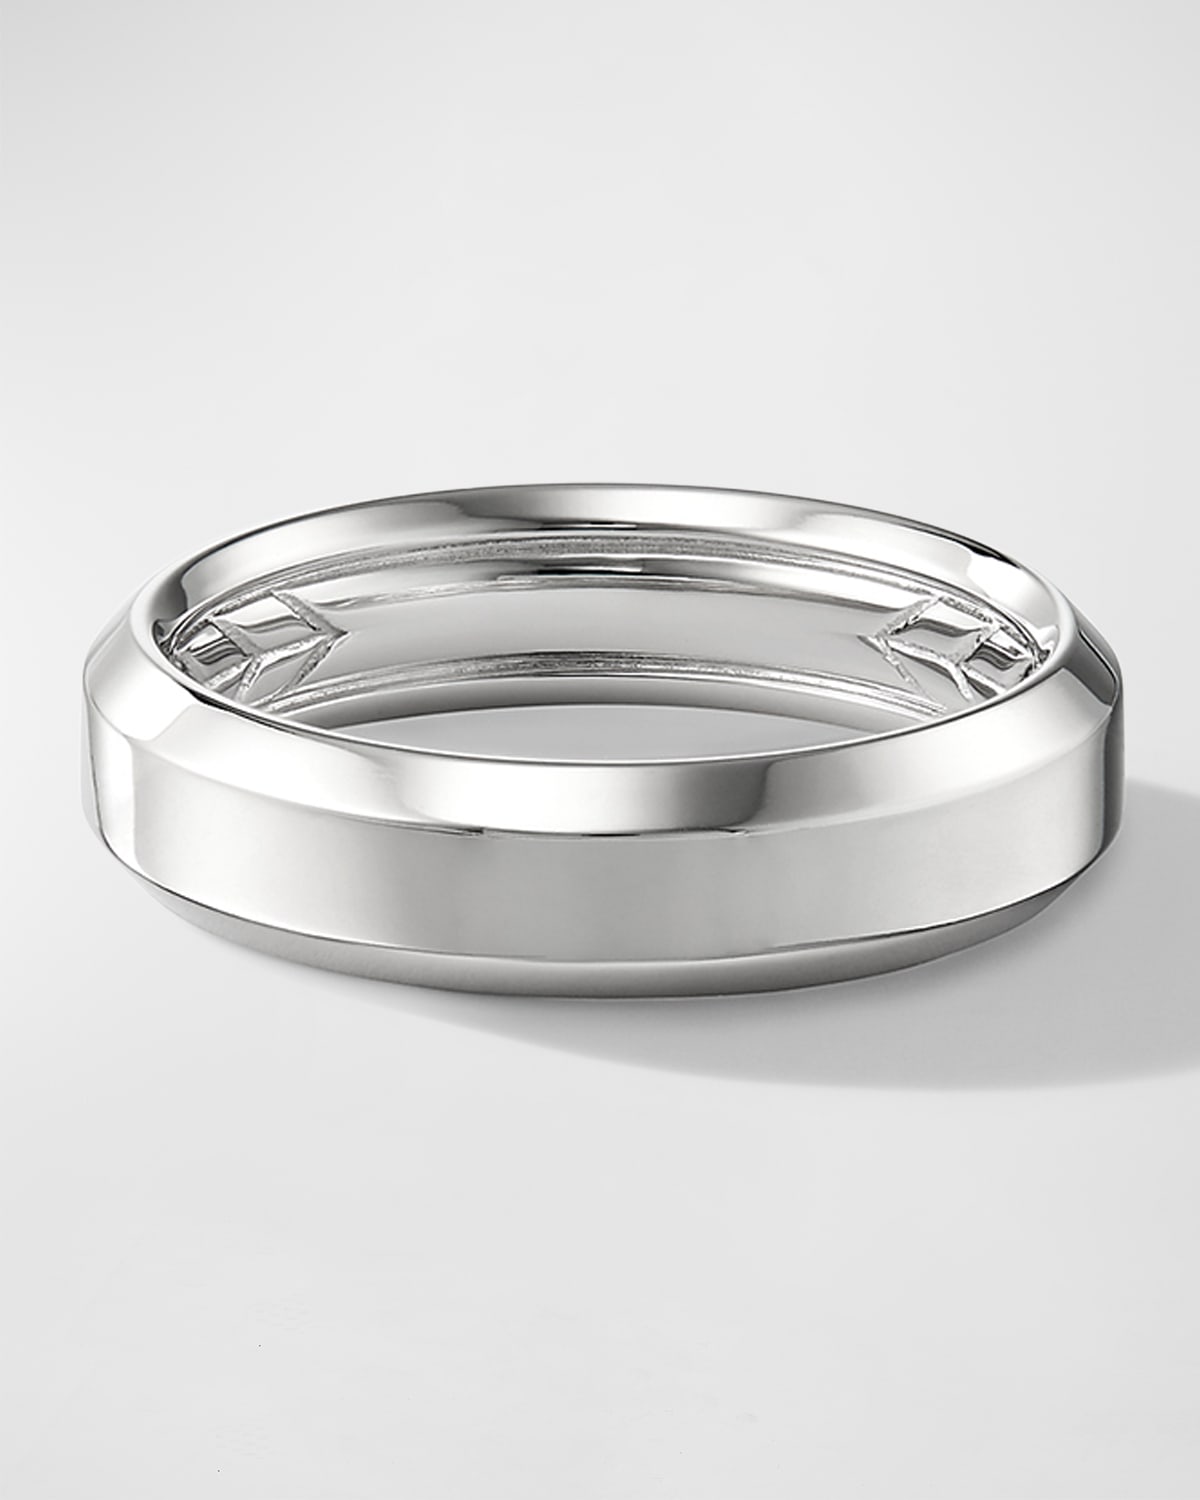 Shop David Yurman Men's Beveled Band Ring In 18k White Gold, 6mm